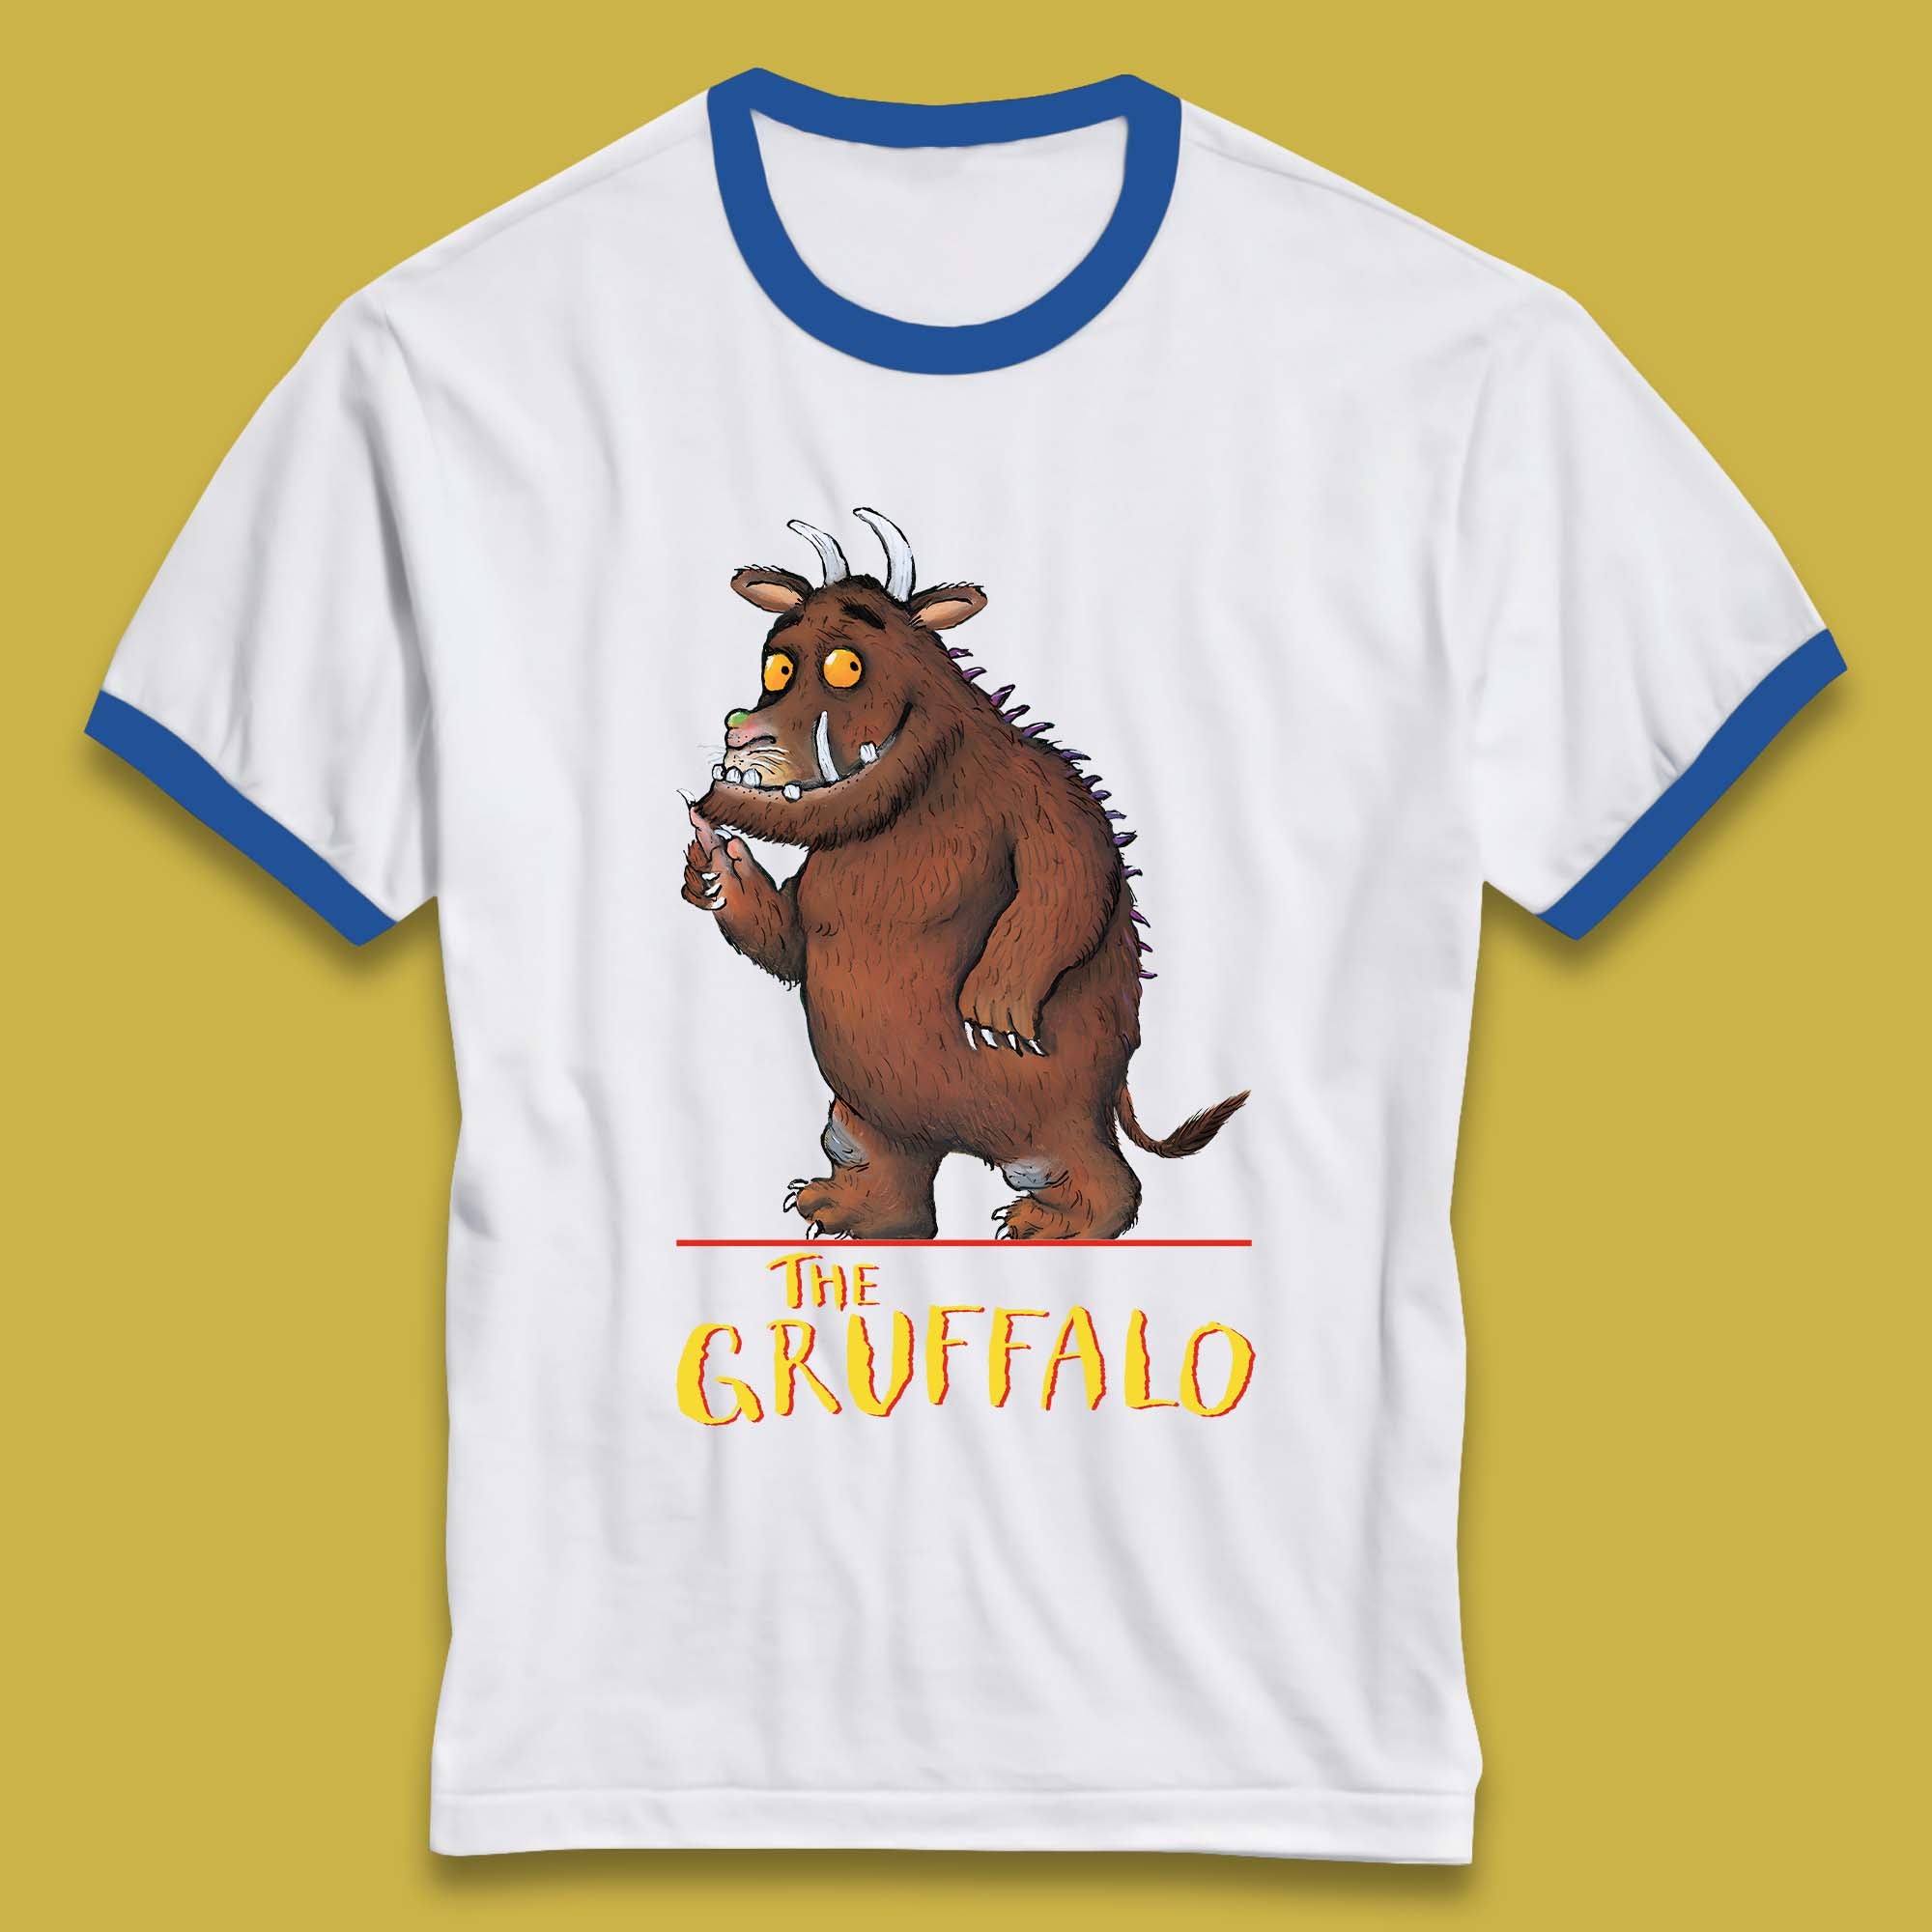 The Gruffalo Ringer T-Shirt